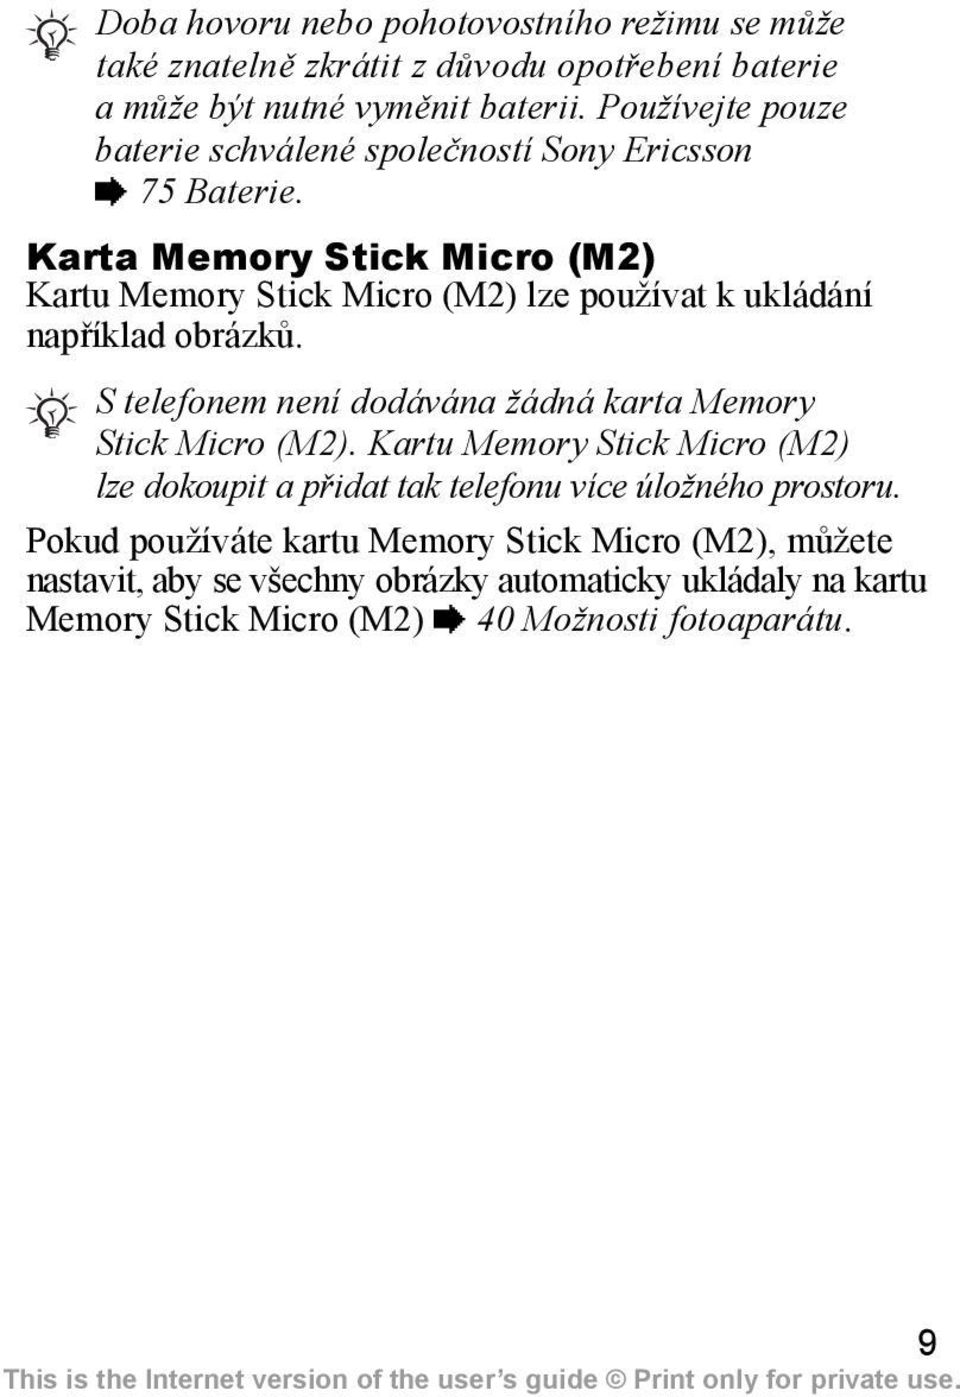 Karta Memory Stick Micro (M2) Kartu Memory Stick Micro (M2) lze používat k ukládání například obrázků.